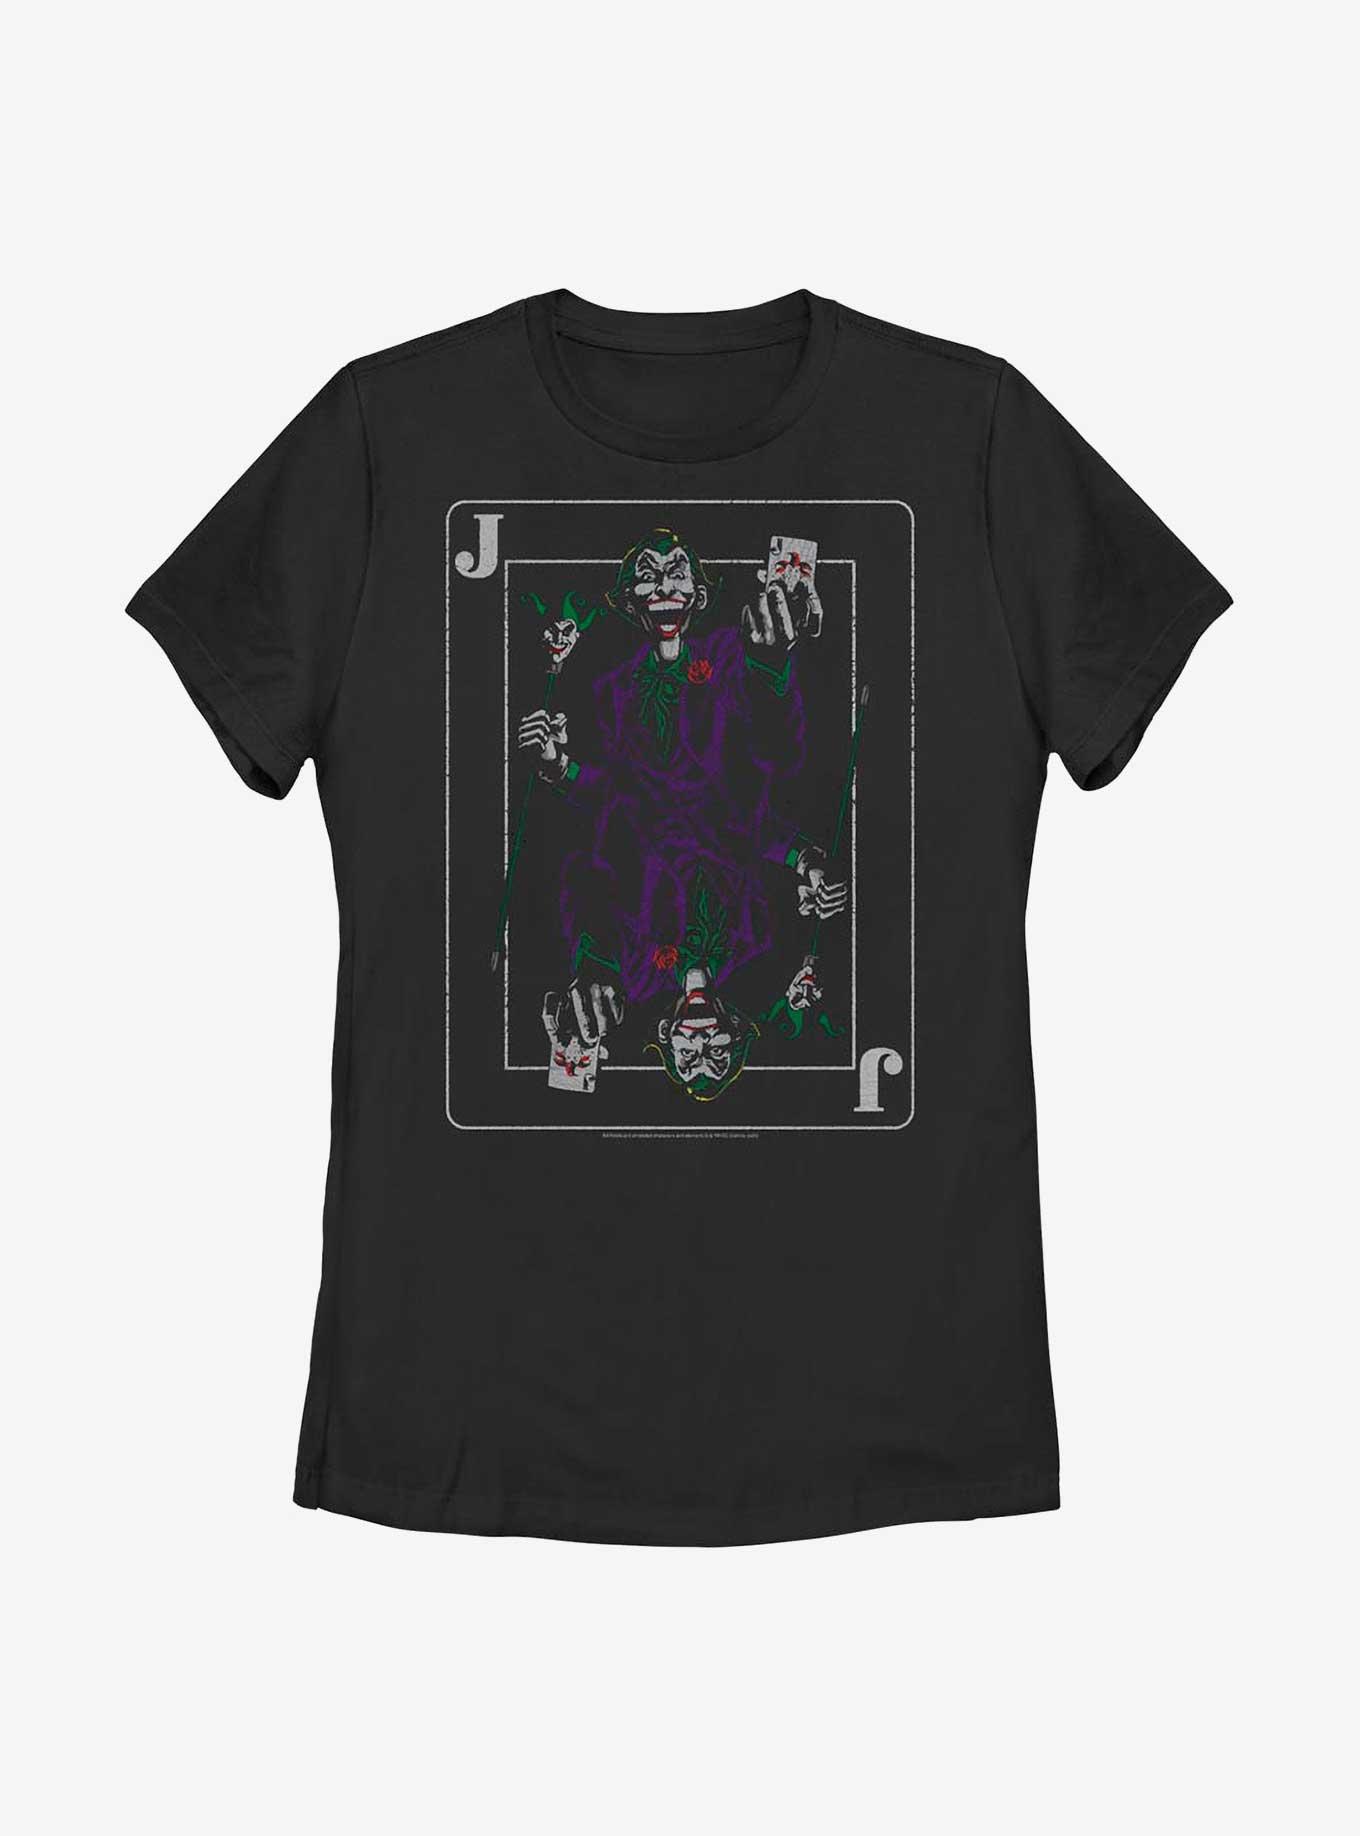 DC Comics Batman Joker's Wild Womens T-Shirt, BLACK, hi-res